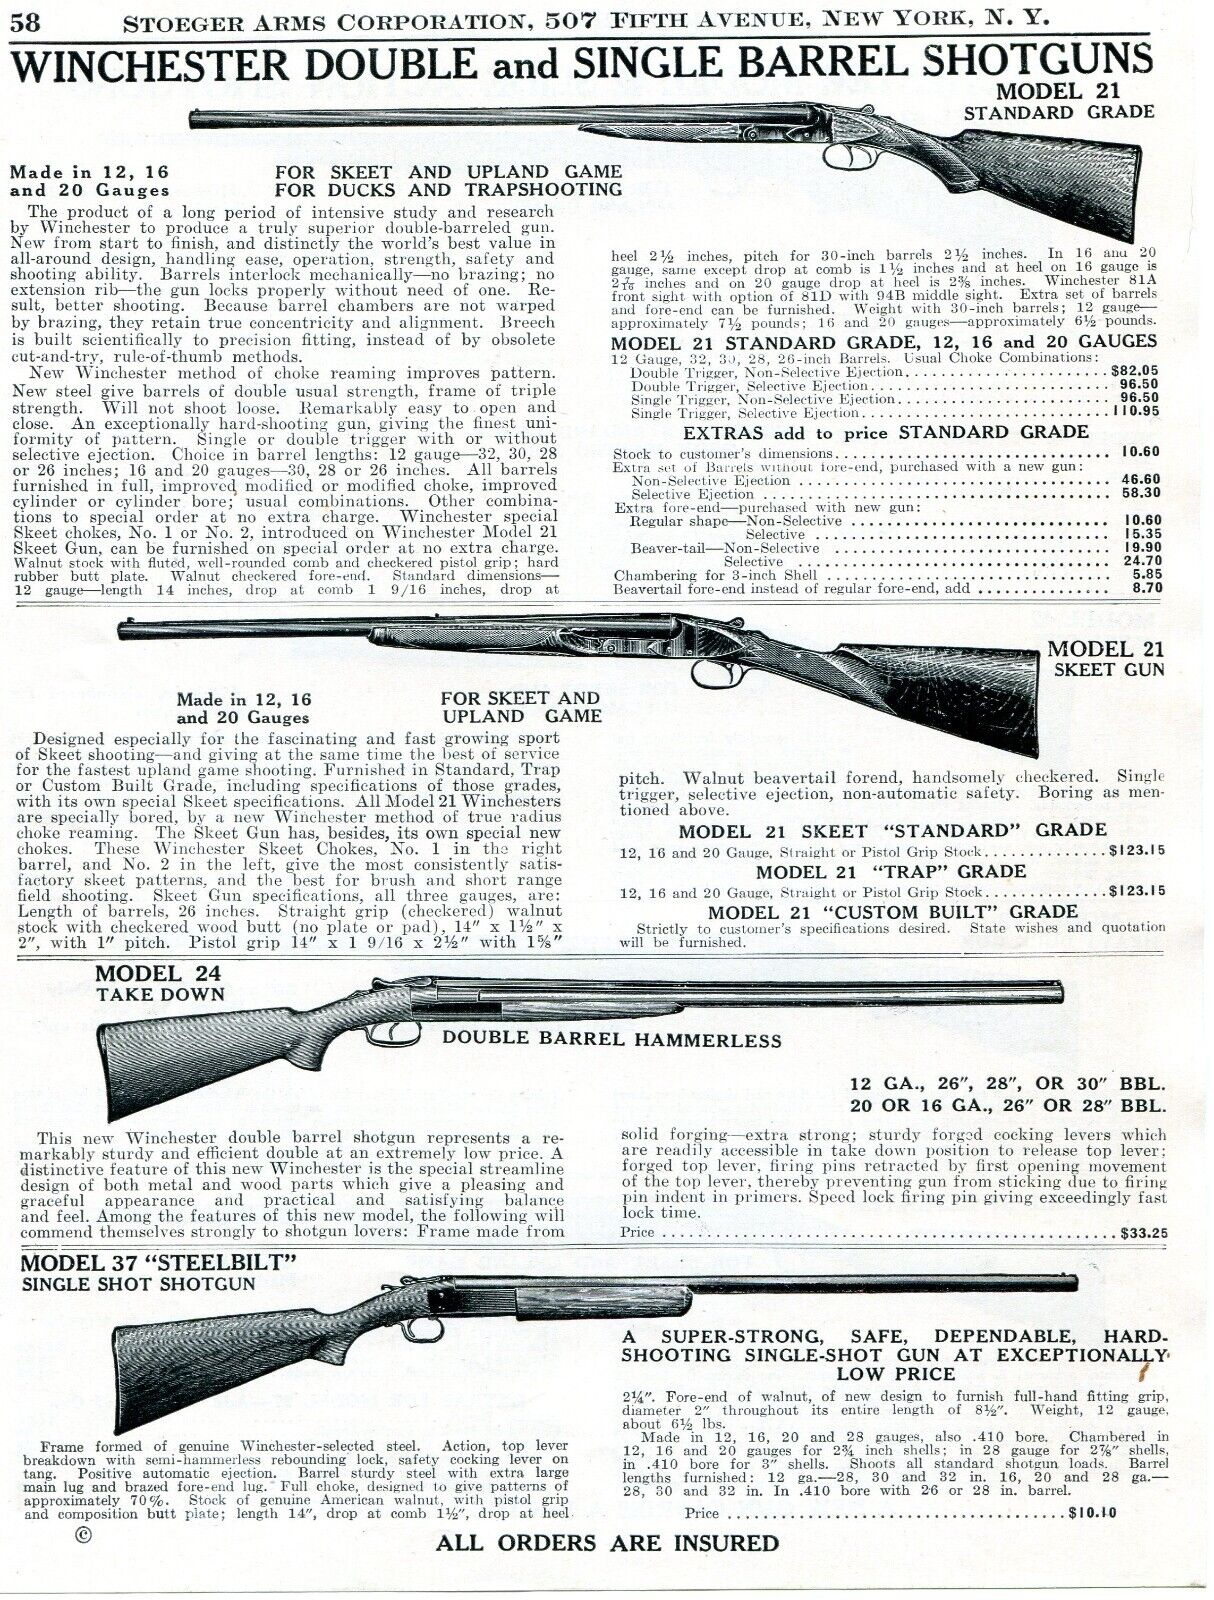 1943 Print Ad of Winchester Model 21 Skeet 24 Takedown 37 Steelbilt Shotgun